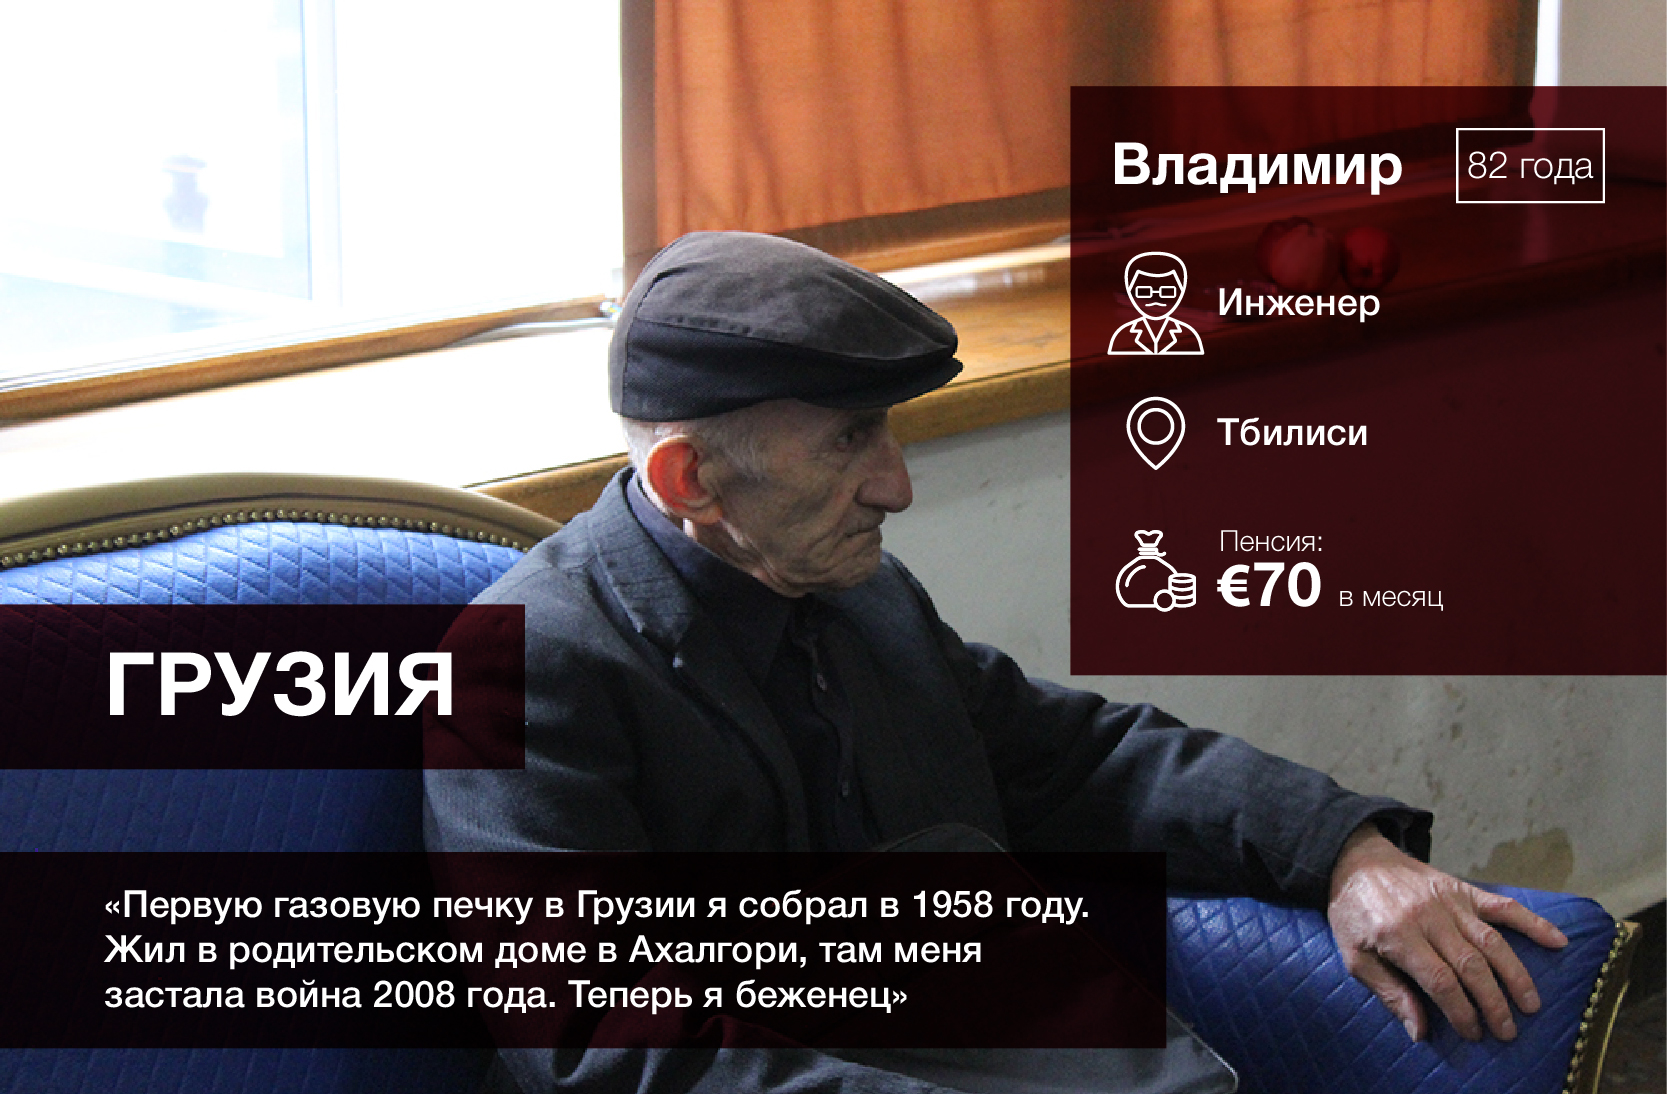 Как живут пенсионеры в постсоветских странах